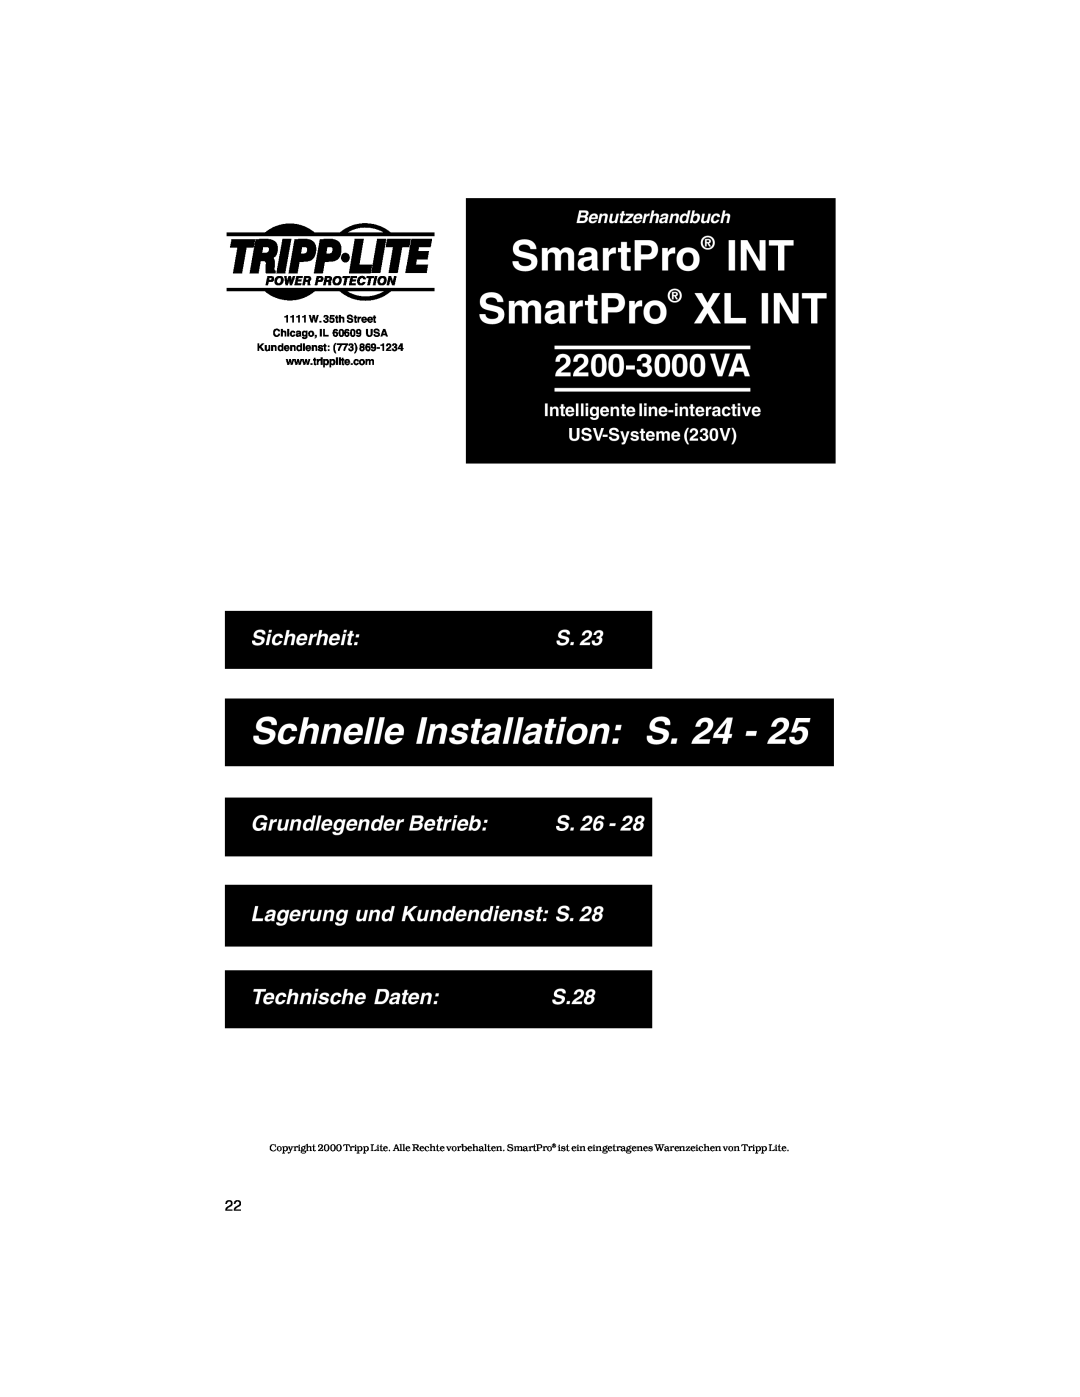 Tripp Lite XL INT Sicherheit, Grundlegender Betrieb, S. 26, Lagerung und Kundendienst S, Technische Daten, S.28 